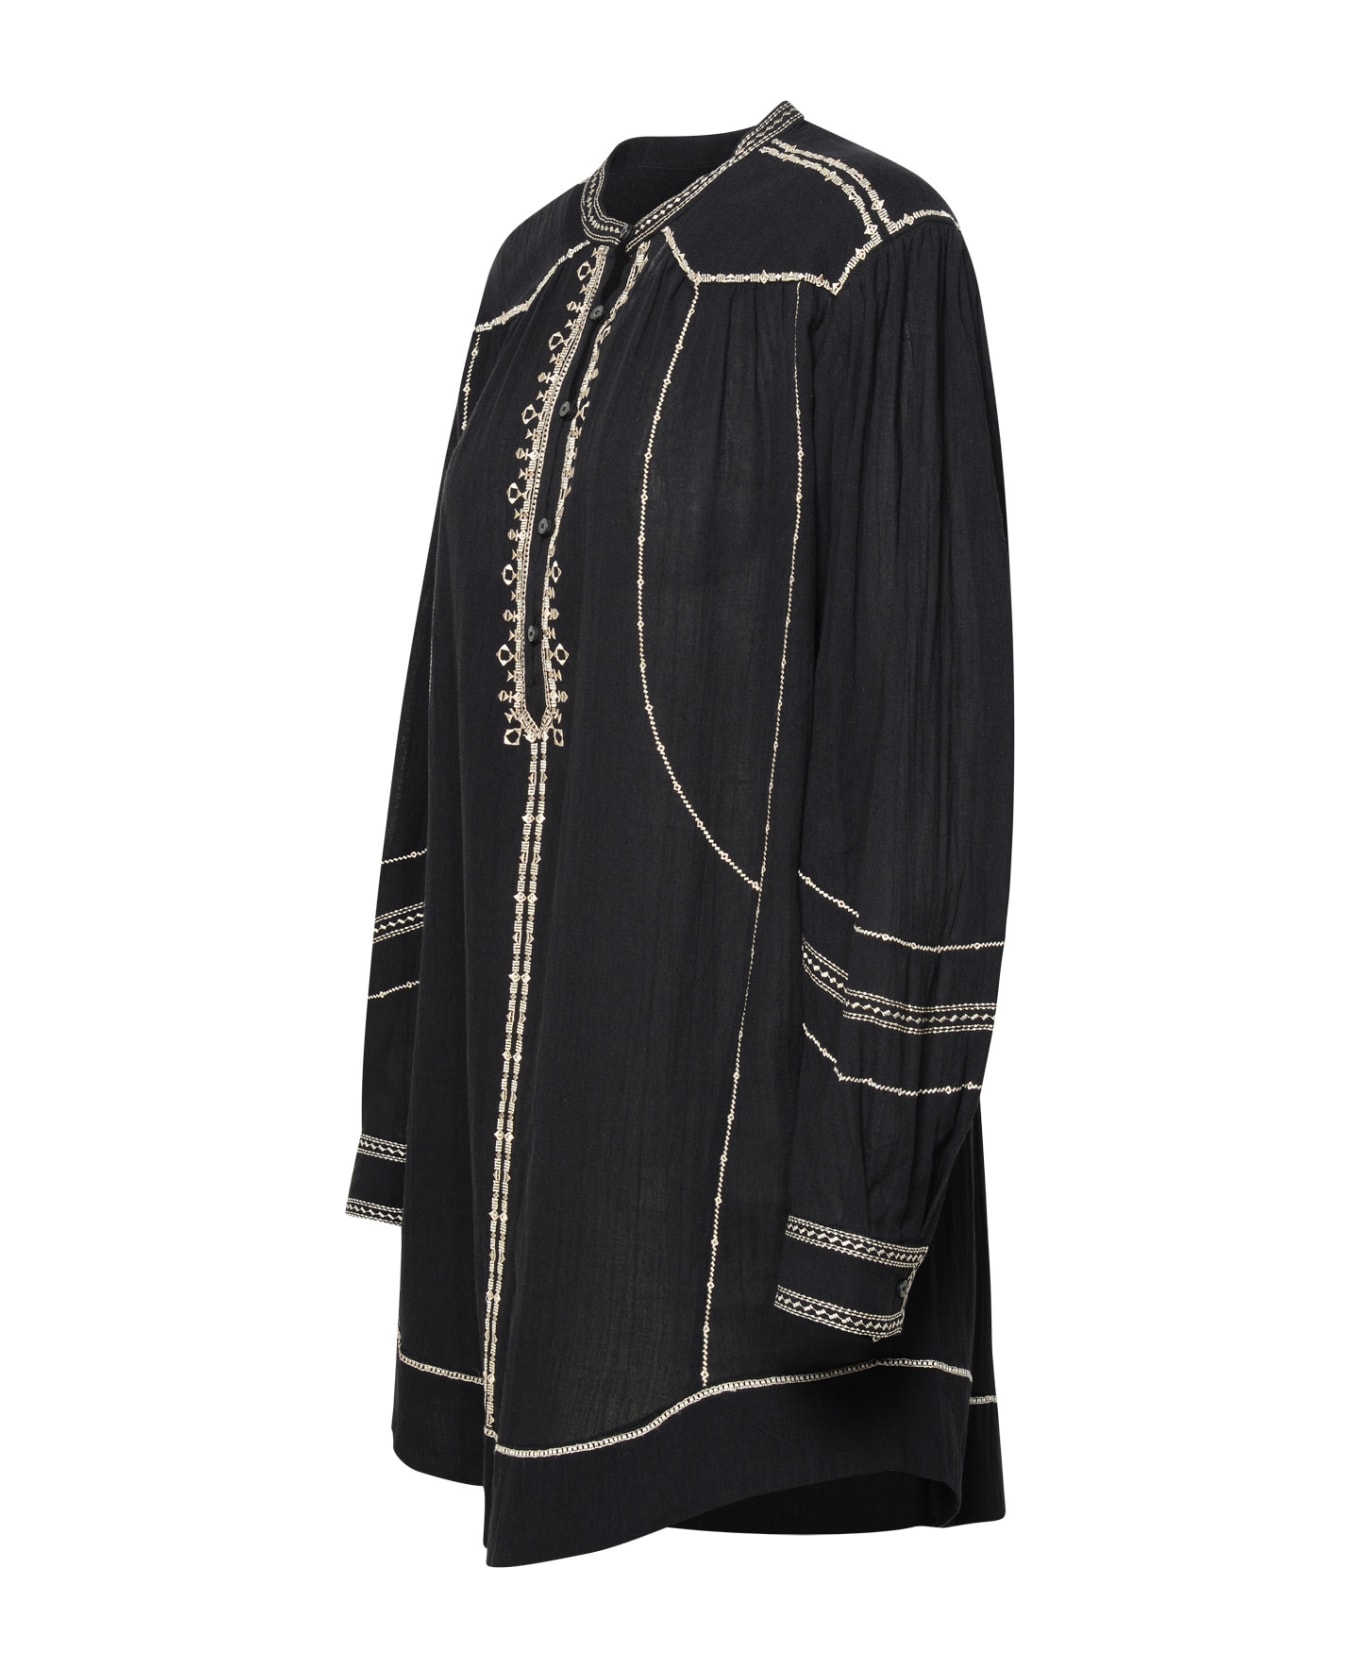 Marant Étoile 'pradel' Black Cotton Dress - Black